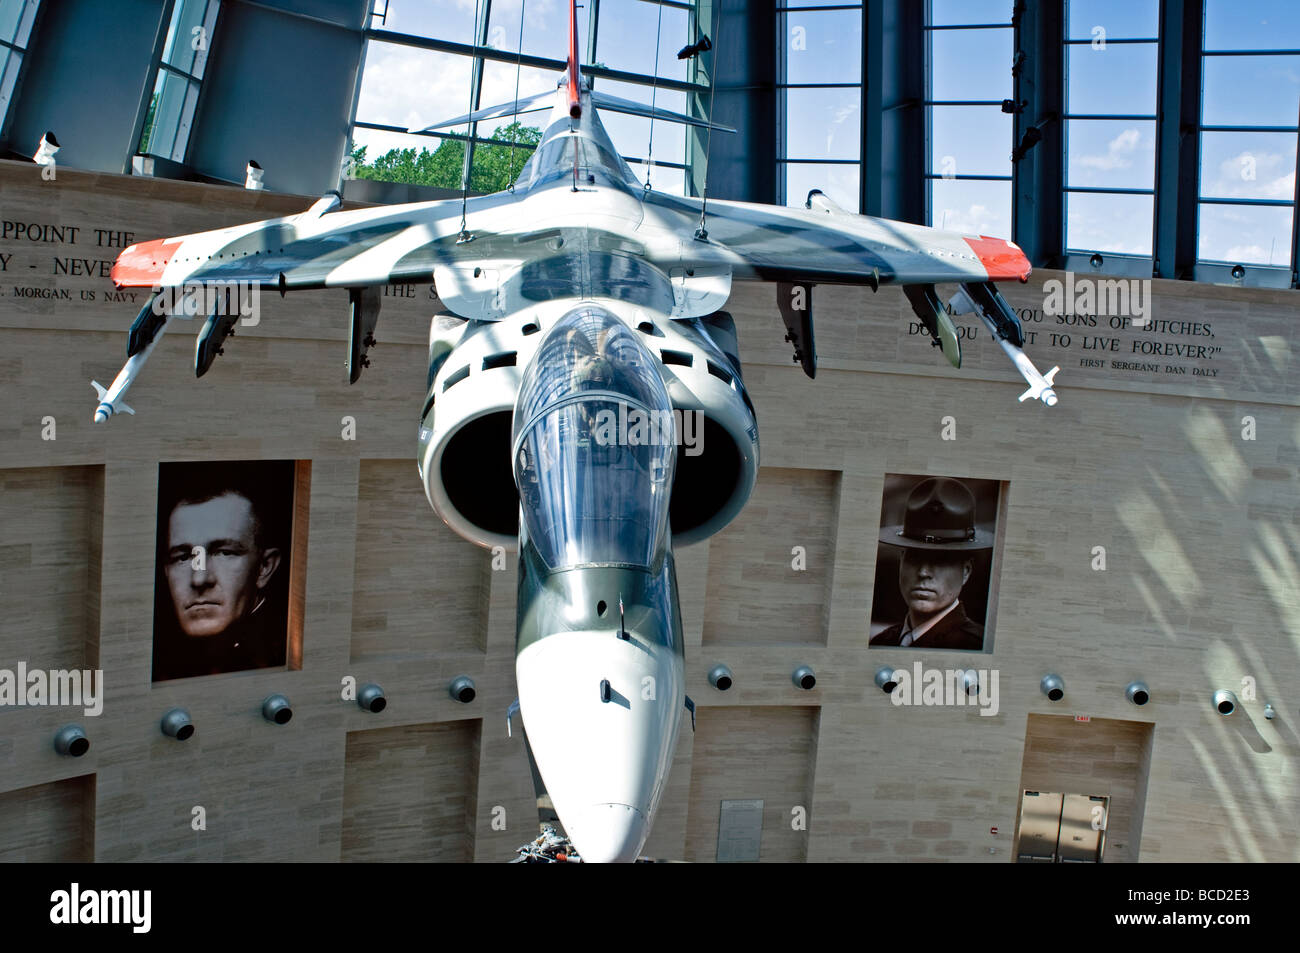 United States Marine Corps Museum de Quantico en Virginie a une excellente collection d'avions de combat vintage & jets sur l'affichage. Banque D'Images